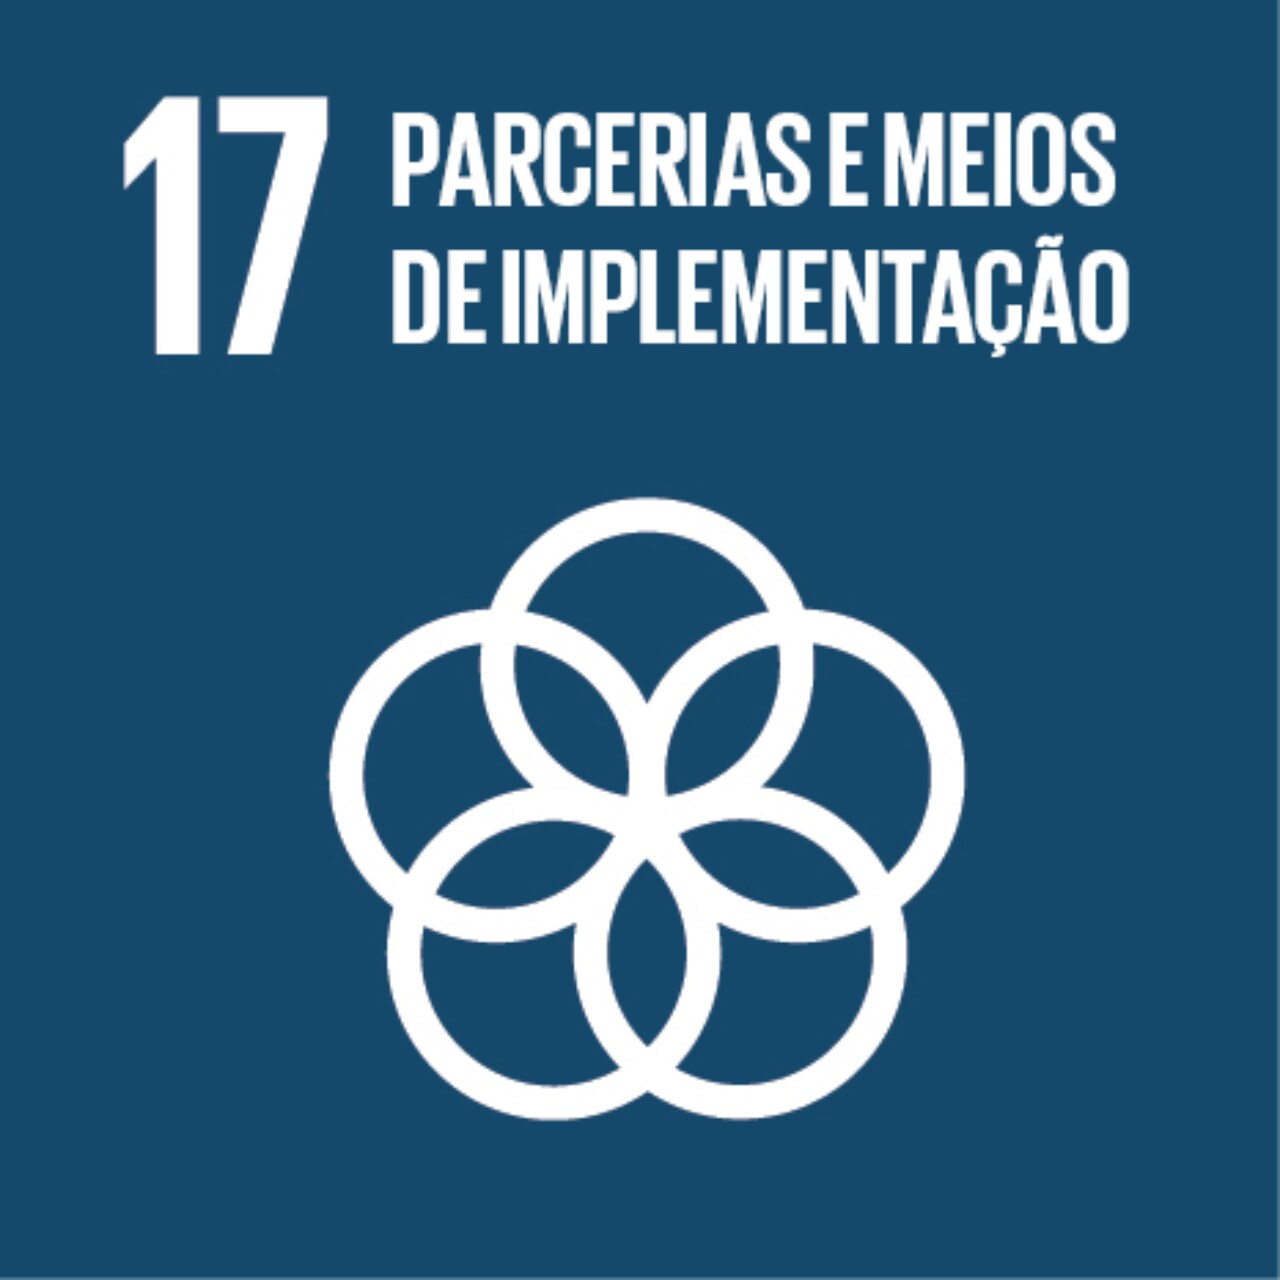 Imagem que representa o ODS número Dezessete – Parcerias e meios de implementação, com fundo azul-escuro e um ícone com círculos interligados.